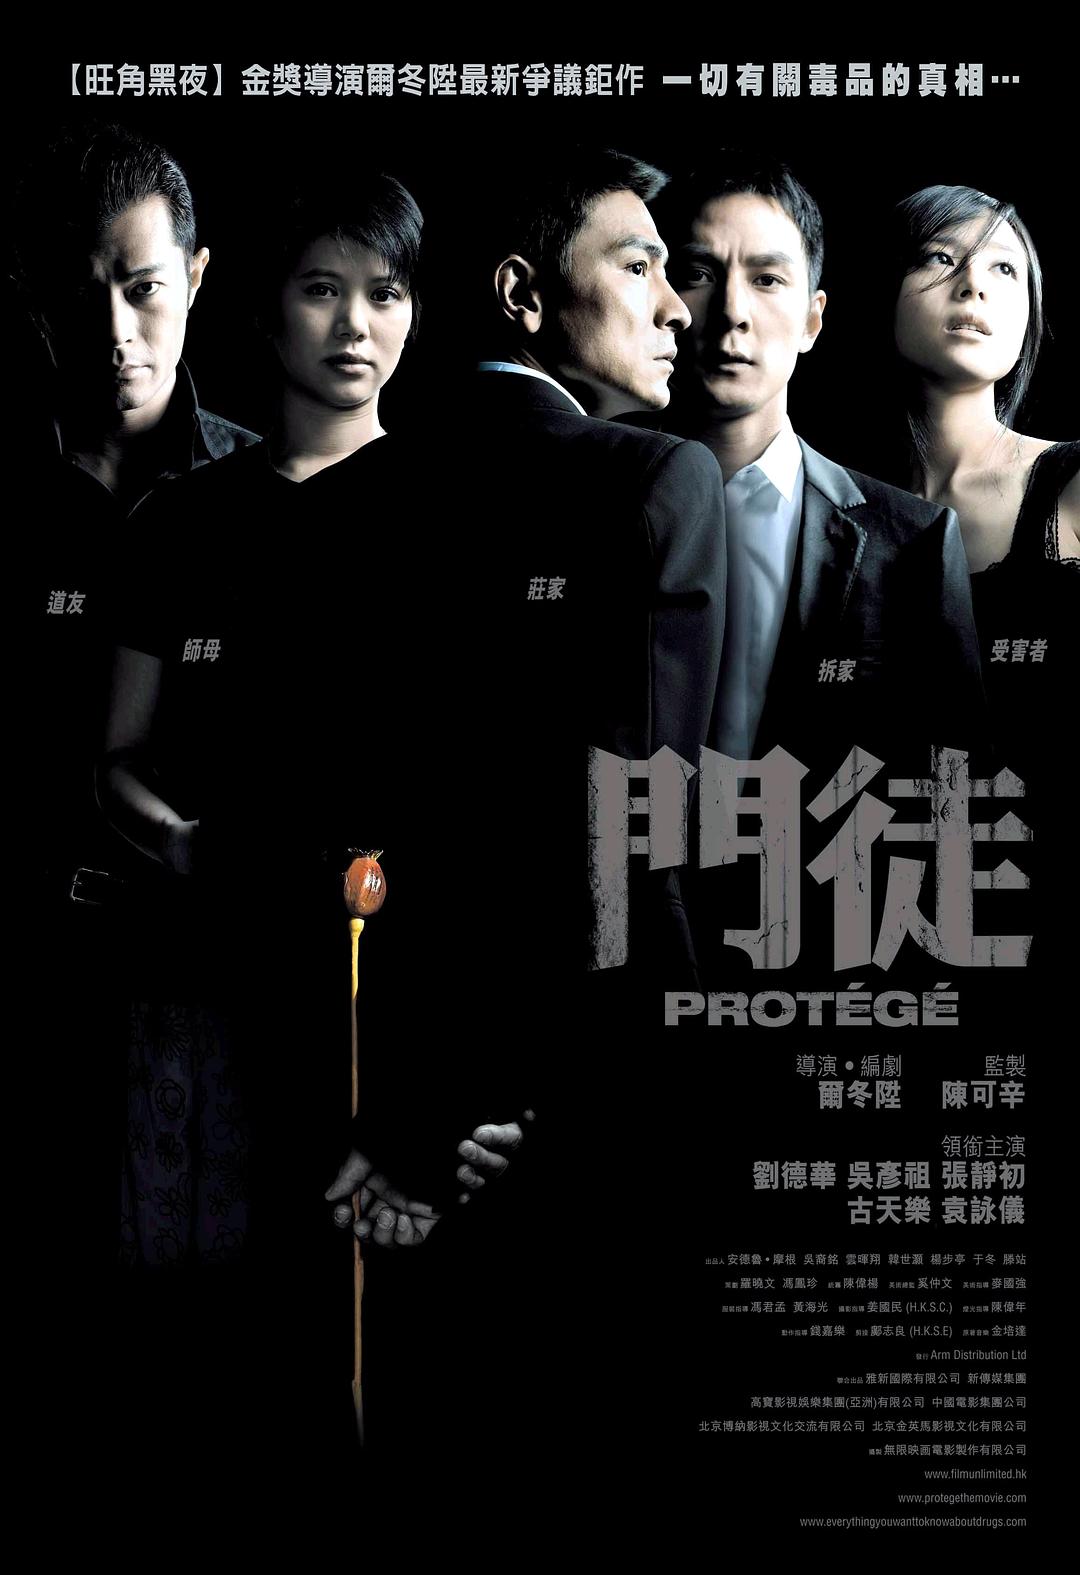 2007年刘德华,吴彦祖8.0分剧情惊悚片《门徒》1080P国粤双语中字